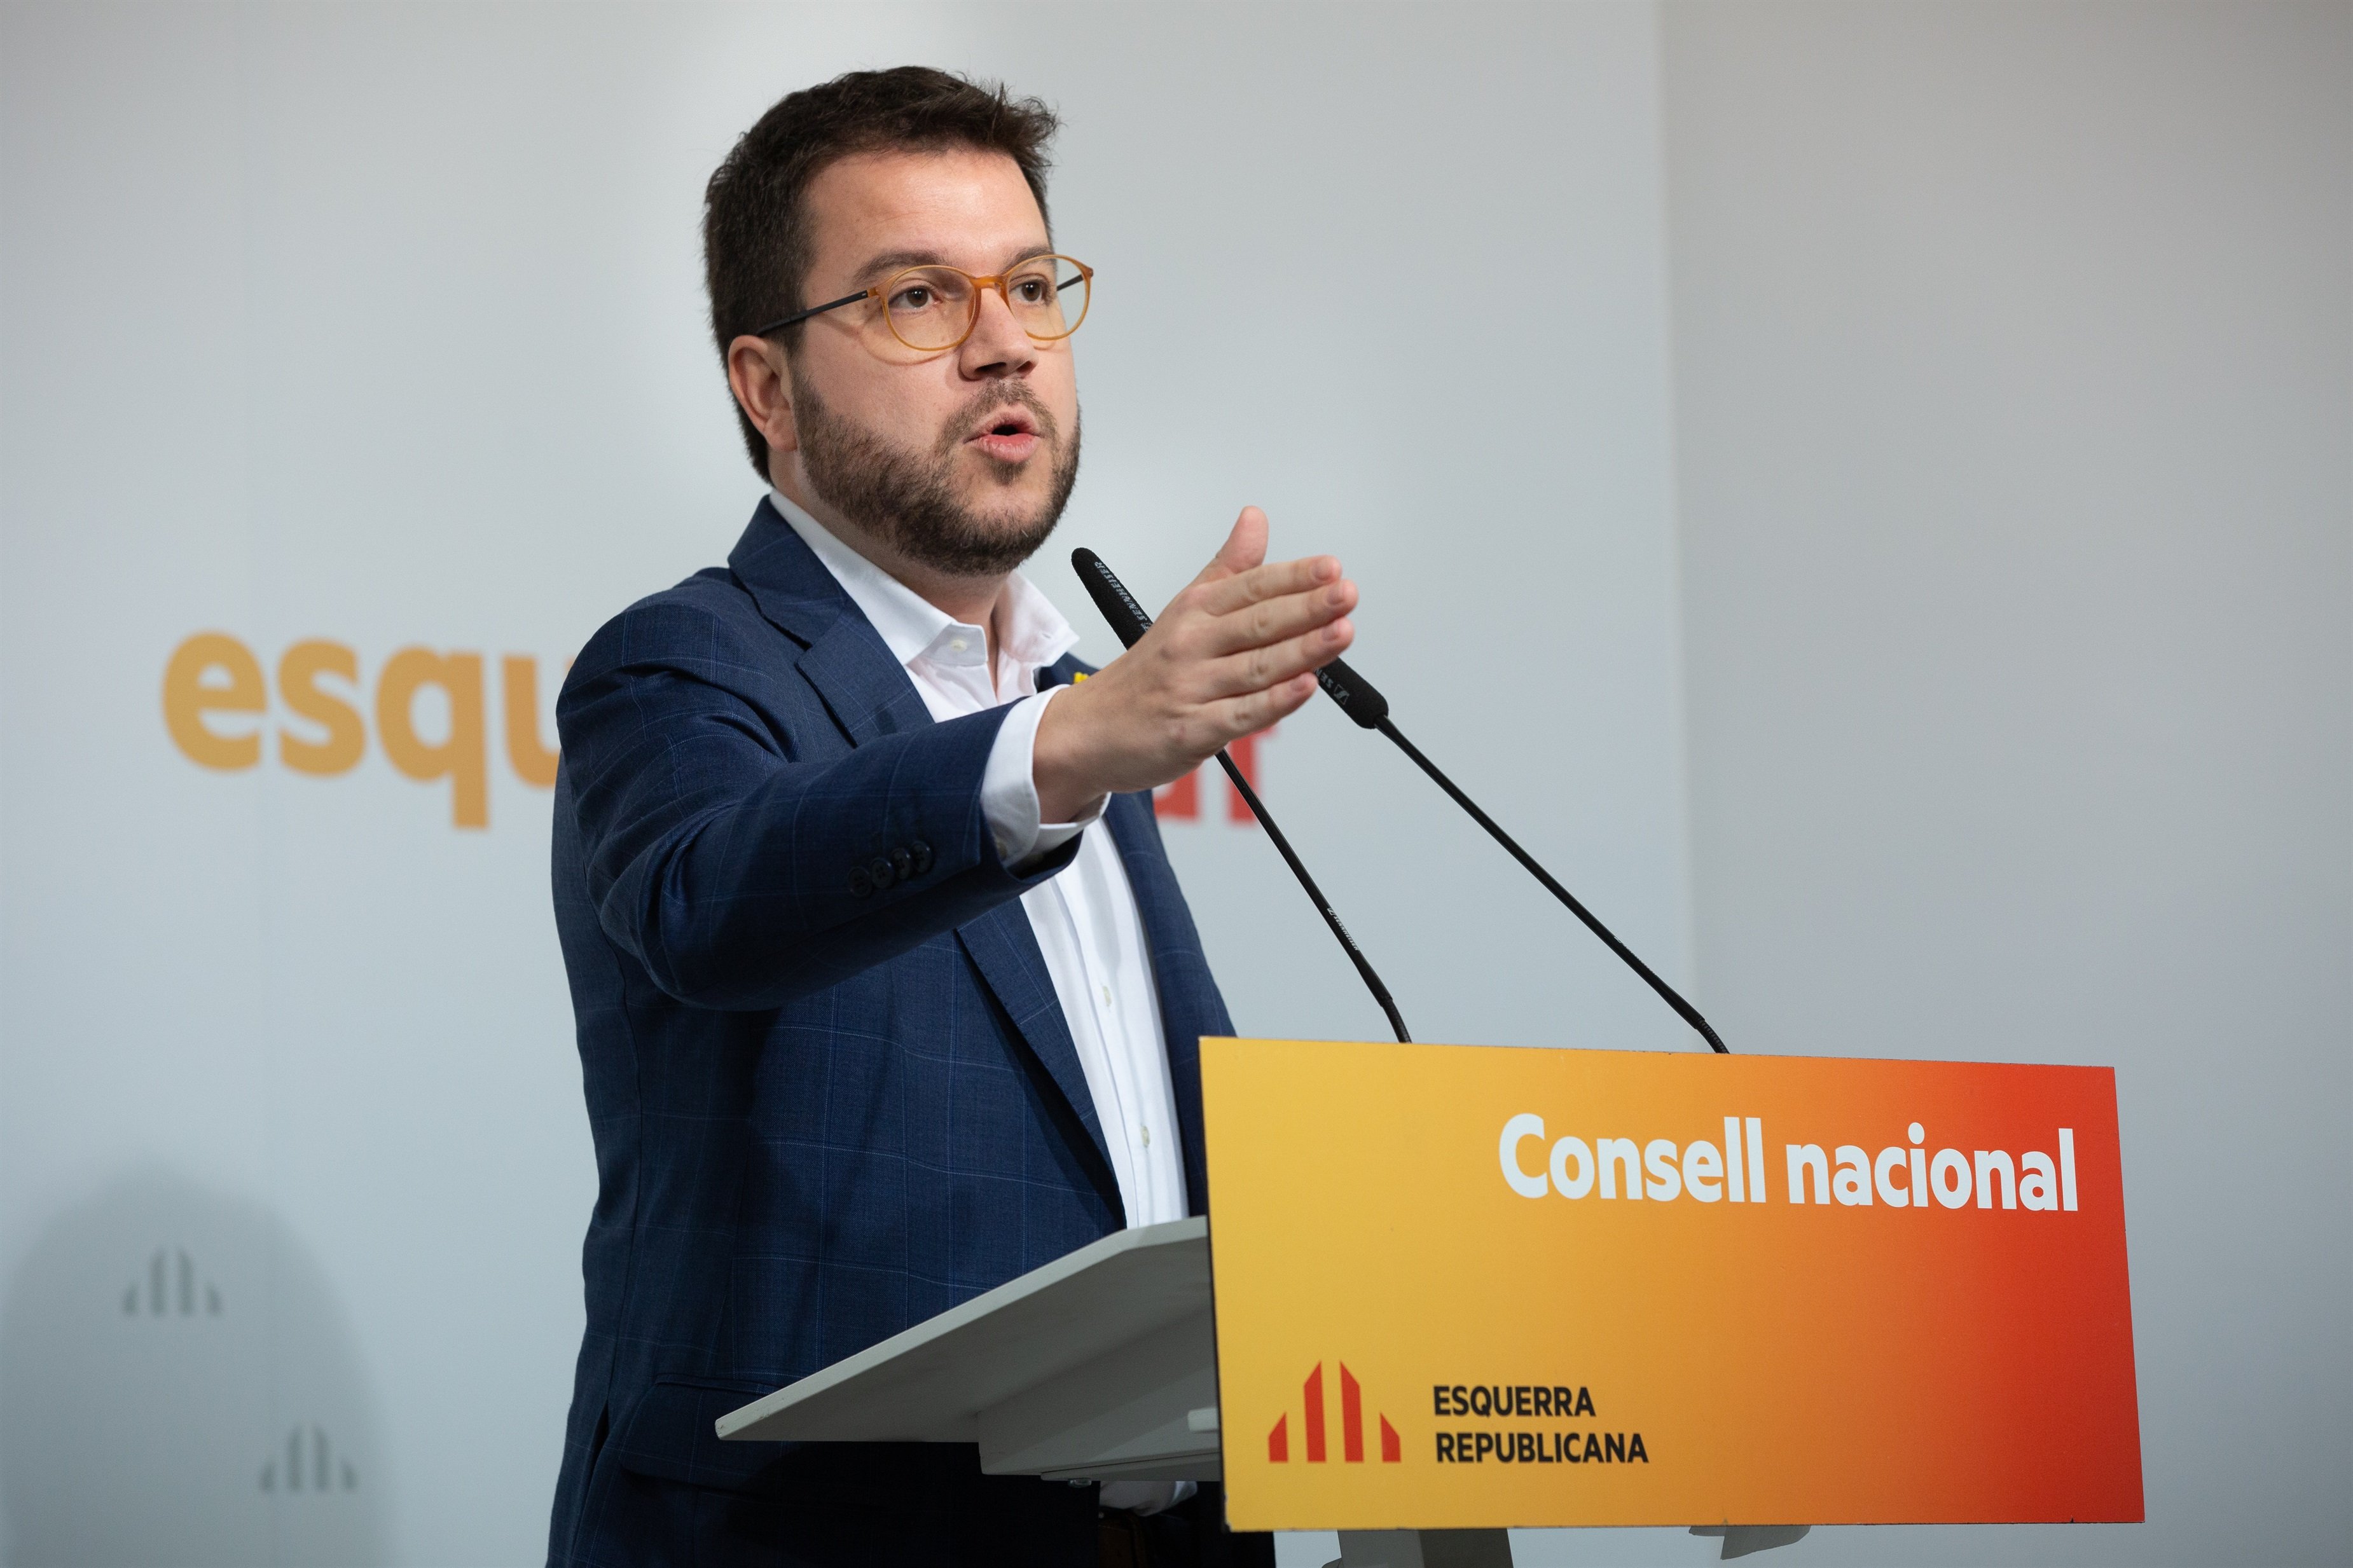 Aragonès i Homrani critiquen la proposta de Sánchez Llibre contra el coronavirus